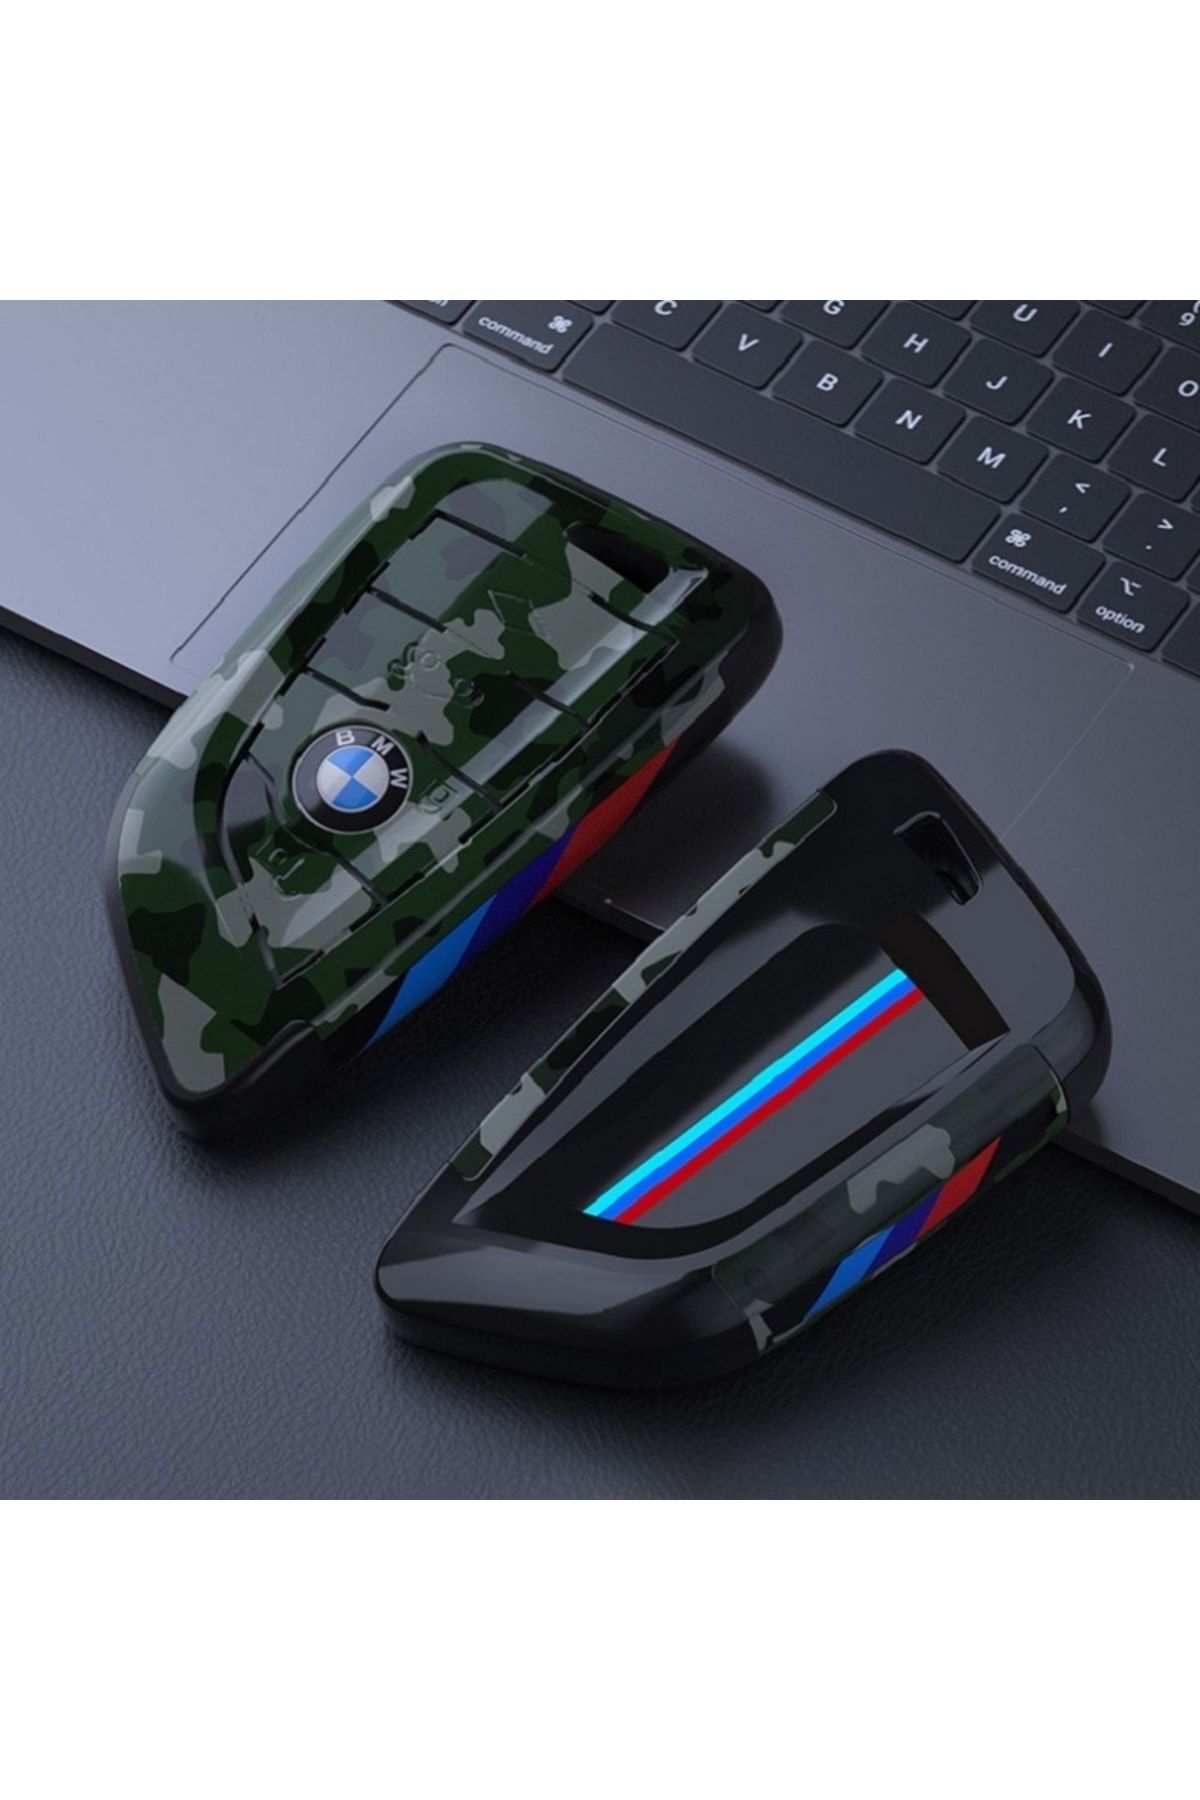 idealaksesuar Bmw Anahtarlık Askeri Desenli Anahtar Kılıfı Sert Plastik Şık Tasarım G X Serisi Uyum Car Keychain